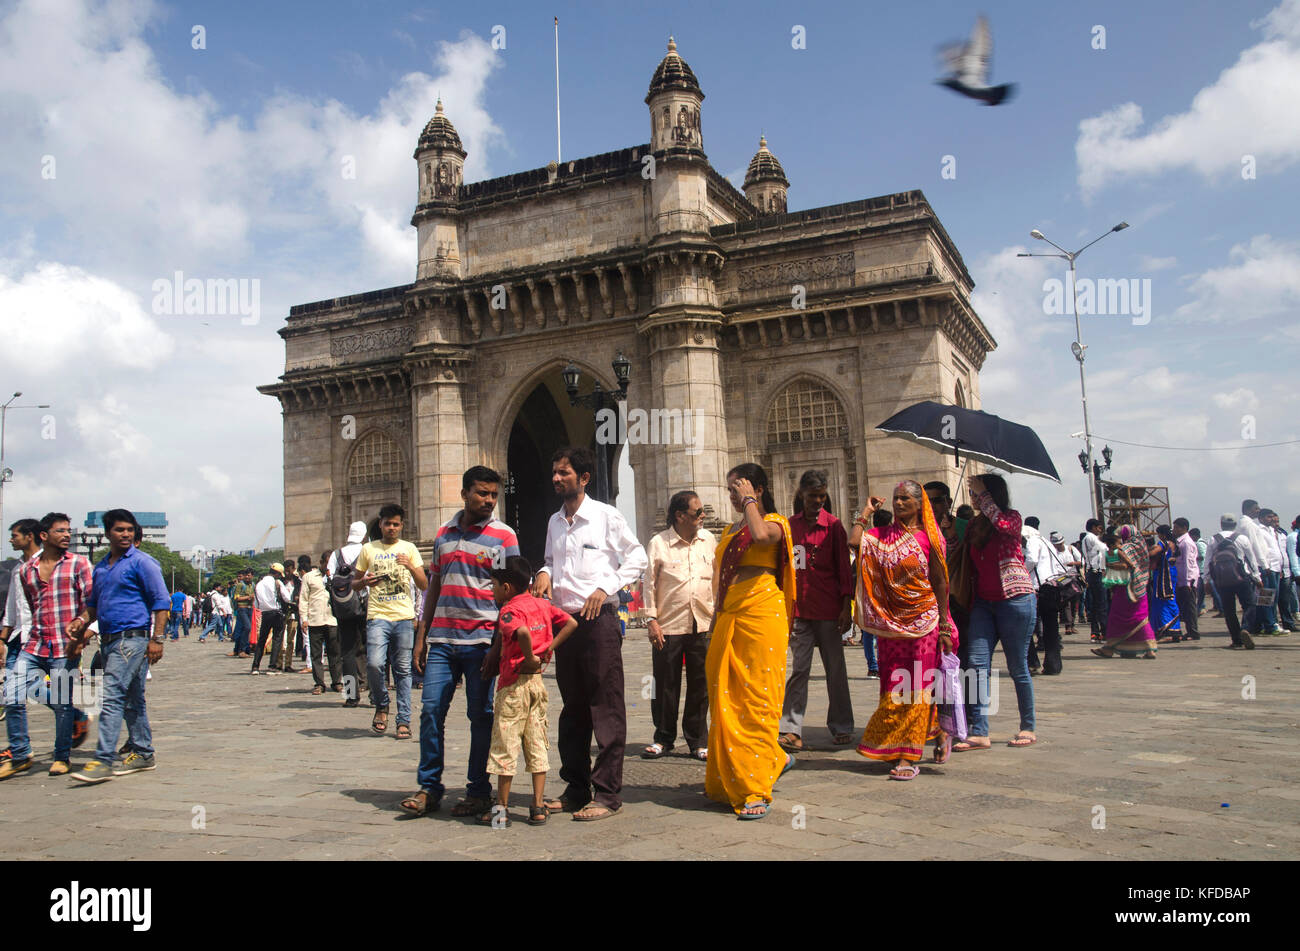 People at the Gateway of India, Mumbai, India Stock Photo